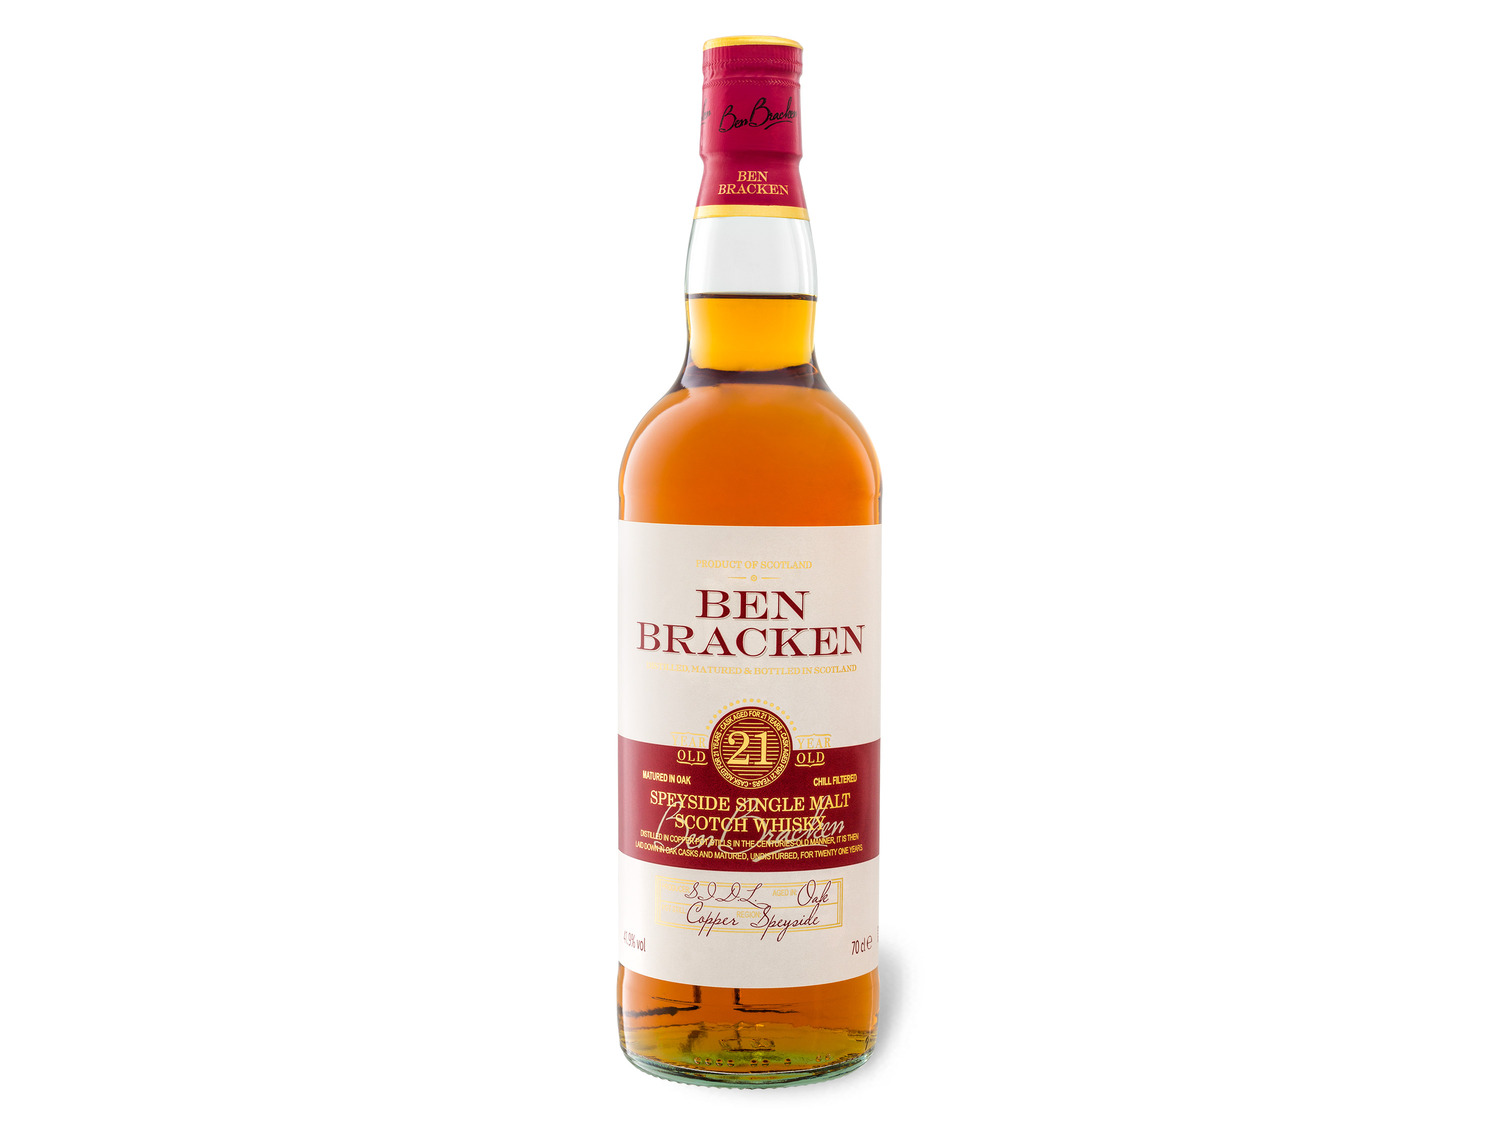 Ben Bracken Speyside Single Malt Scotch Whisky 21 Jahr…